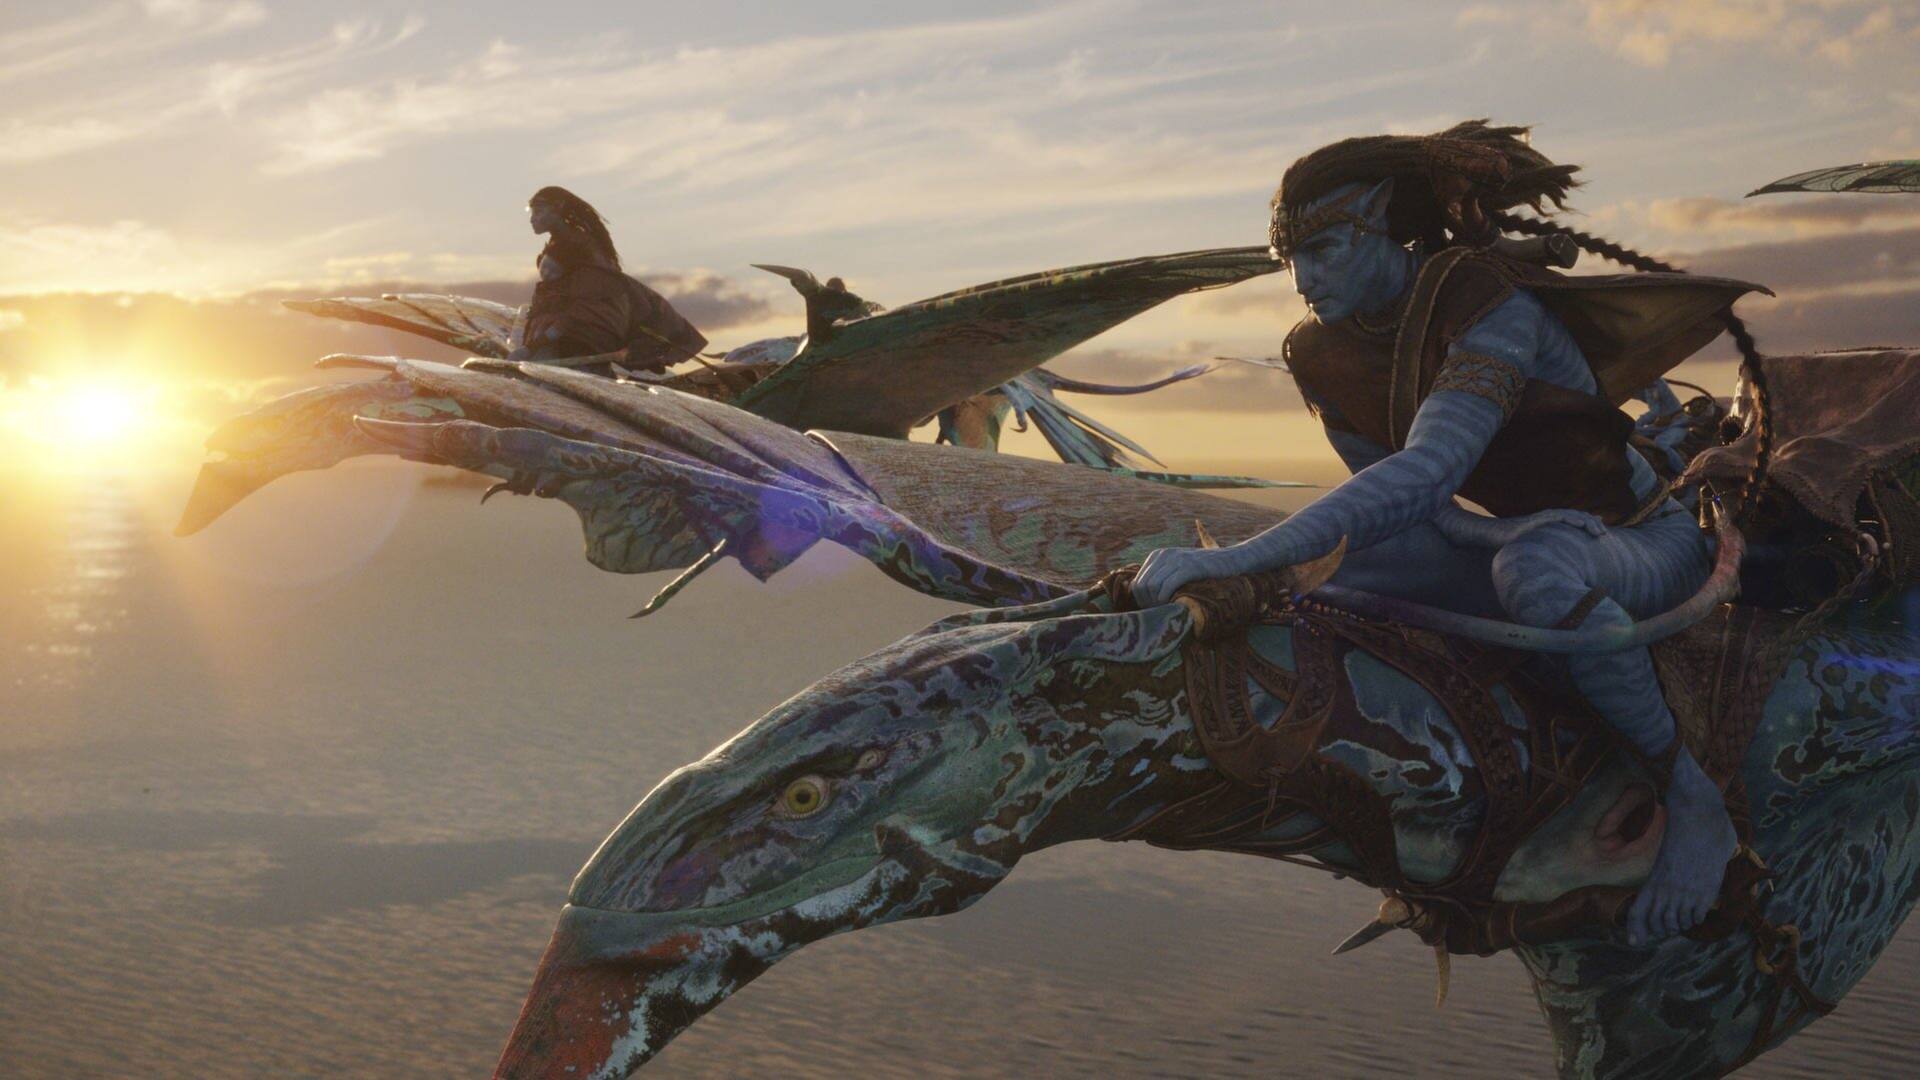 Szenenbild aus dem Film Avatar: Zwei Figuren reiten auf fliegenden Drachen im Sonnenuntergang (Foto: Disney)